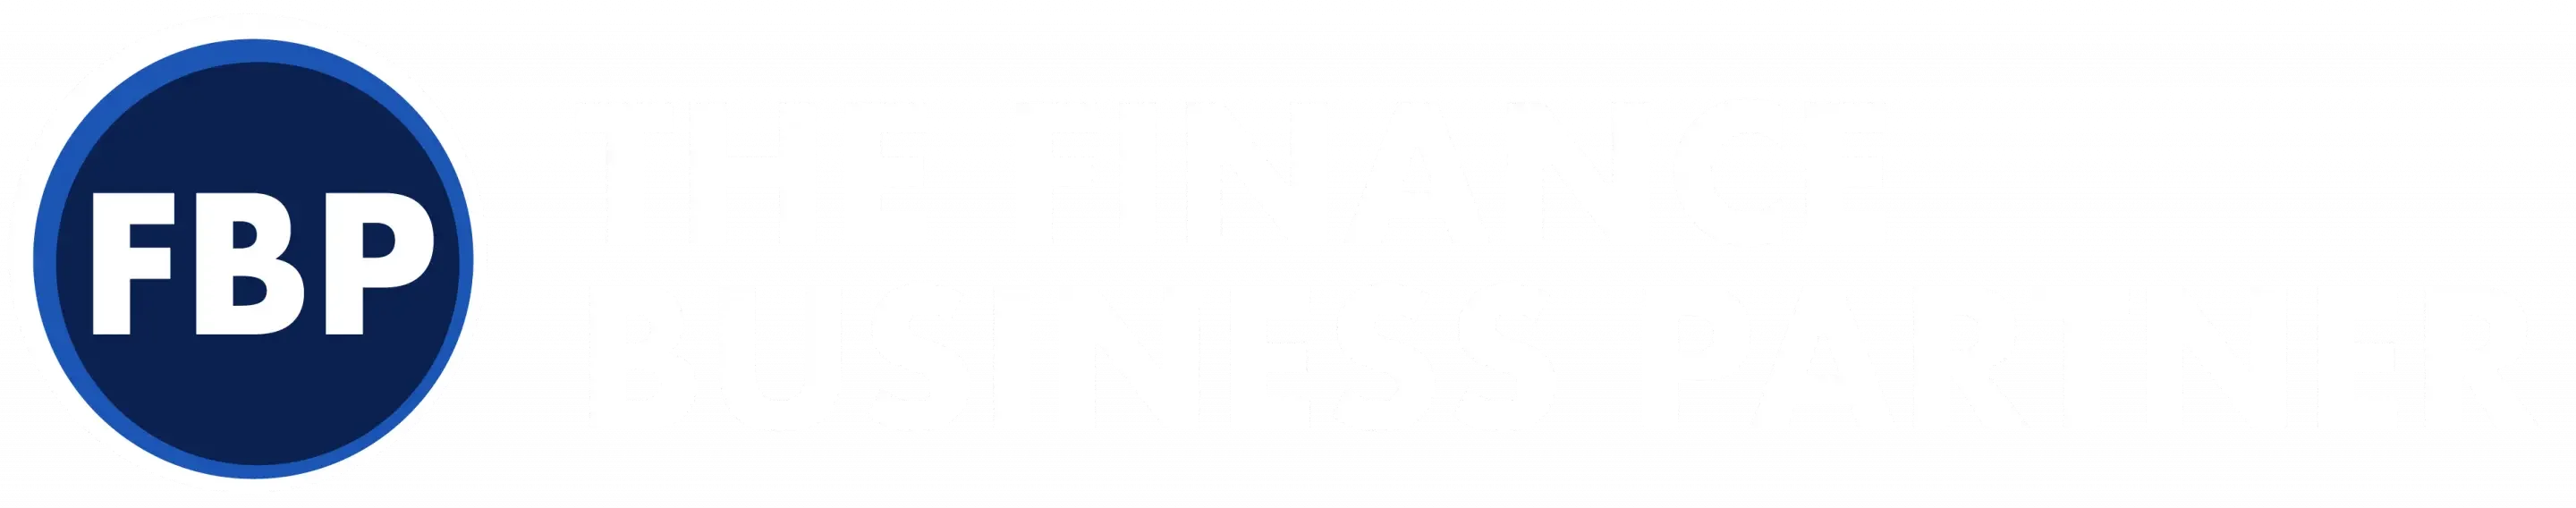 The Finance Business Partner logo